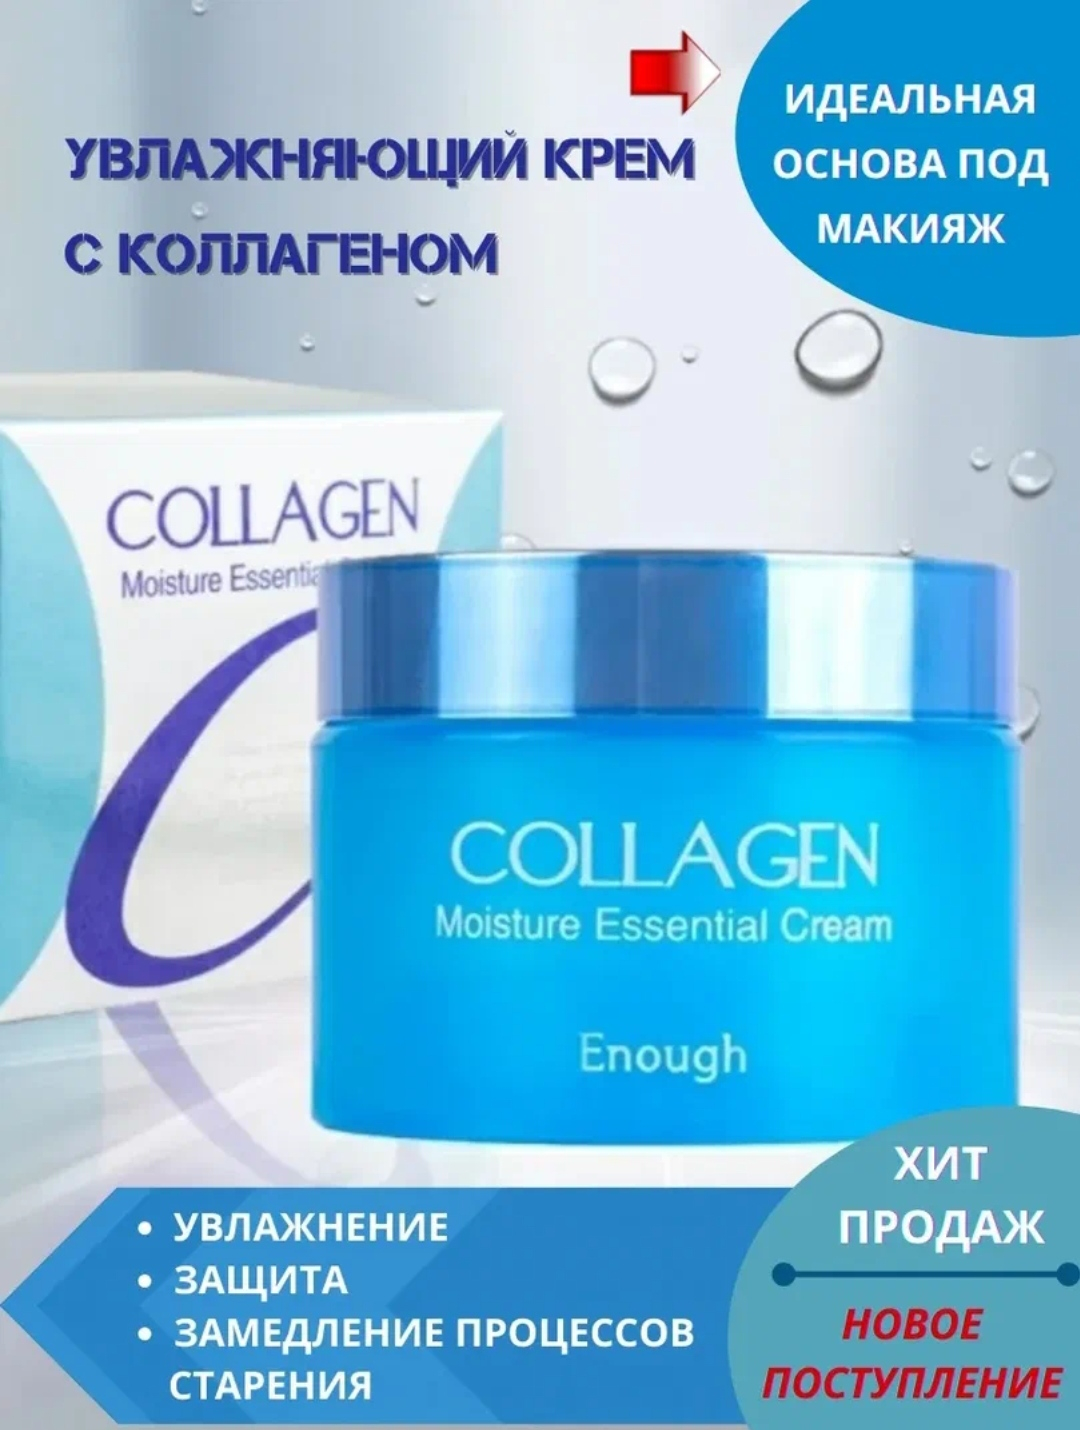 Купить крем collagen. Крем коллаген. Коллагеновый крем для лица. Коллаген увлажняющий крем. Крем коллаген крем для лица.